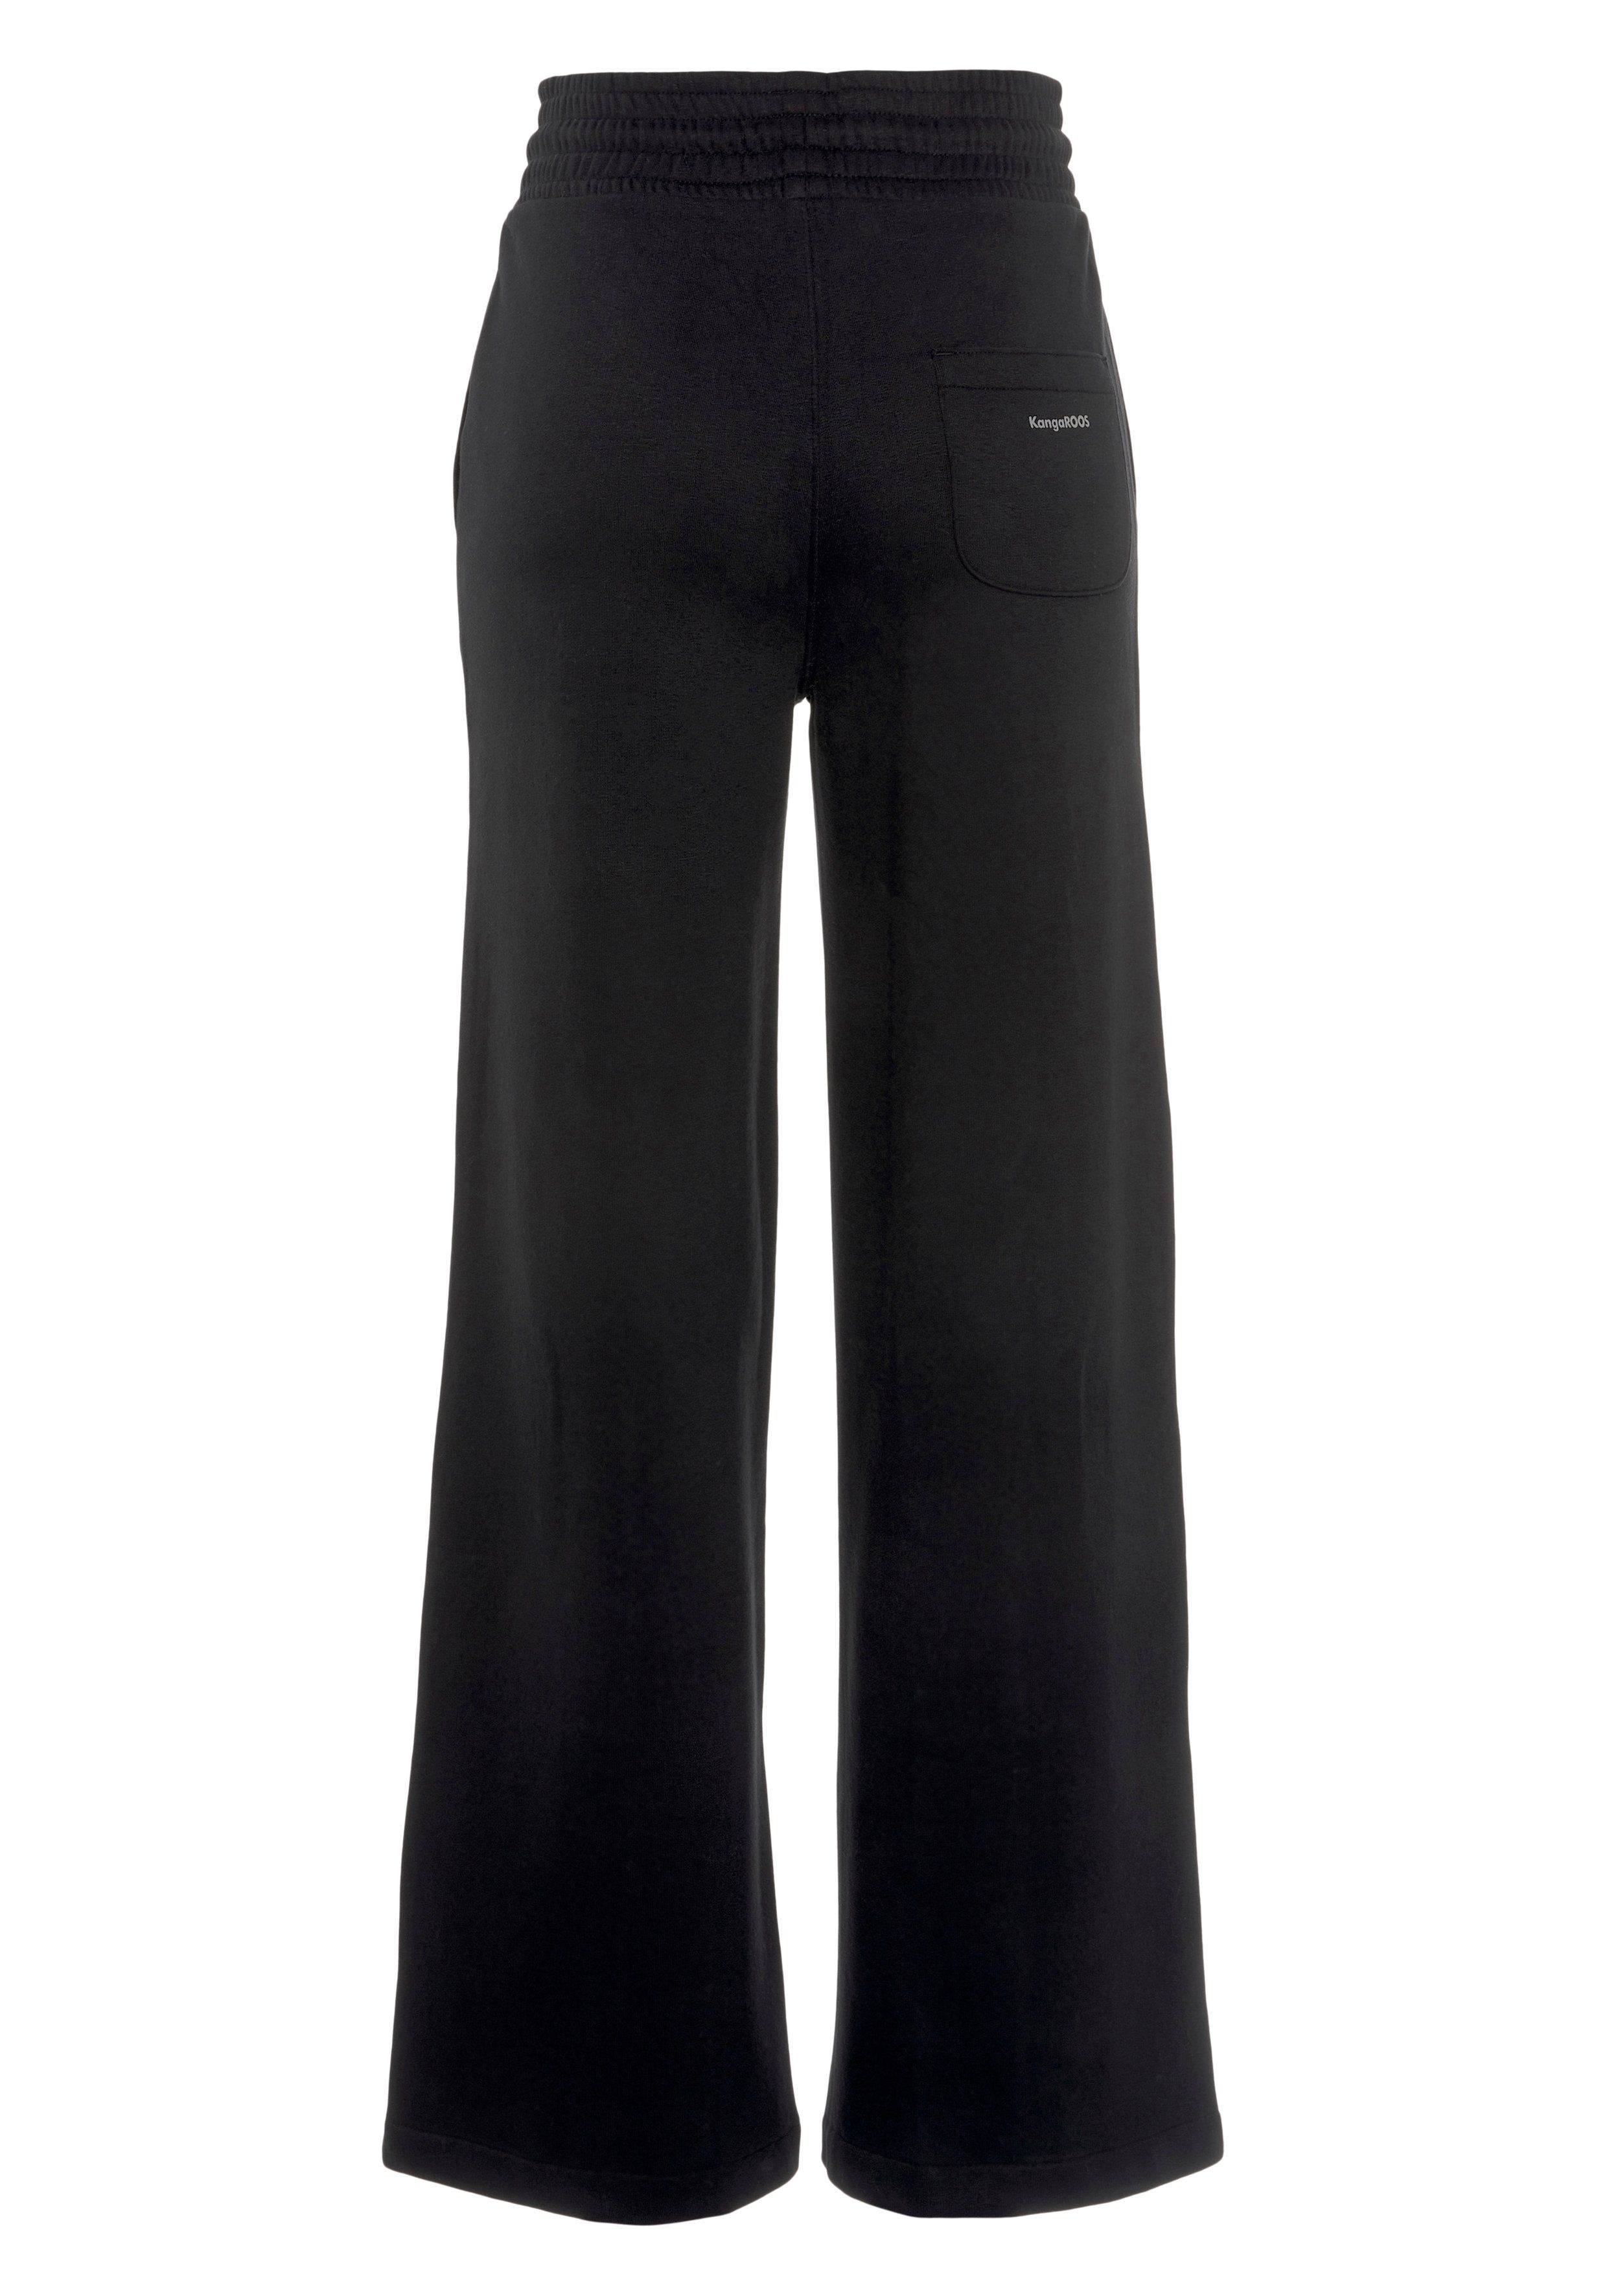 KangaROOS Jogginghose mit modisch - Gummibund NEUE KOLLEKTION breitem schwarz extra